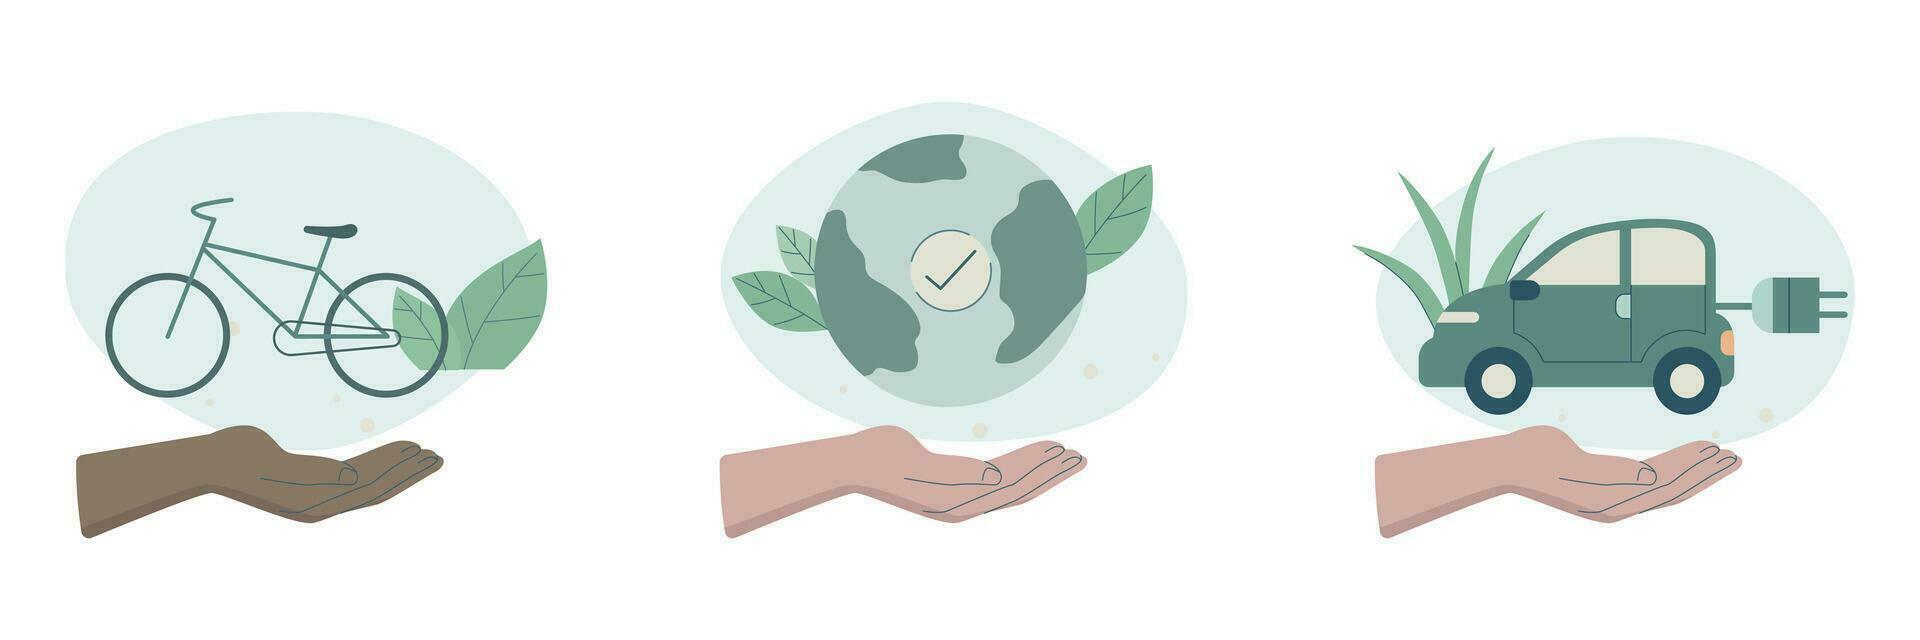 Öko freundlich nachhaltig, einstellen von Pflege Zeichen Hände halten Erde, verwenden Fahrrad und elektrisch Auto, Erhaltung von Ökologie von Planet, vektor